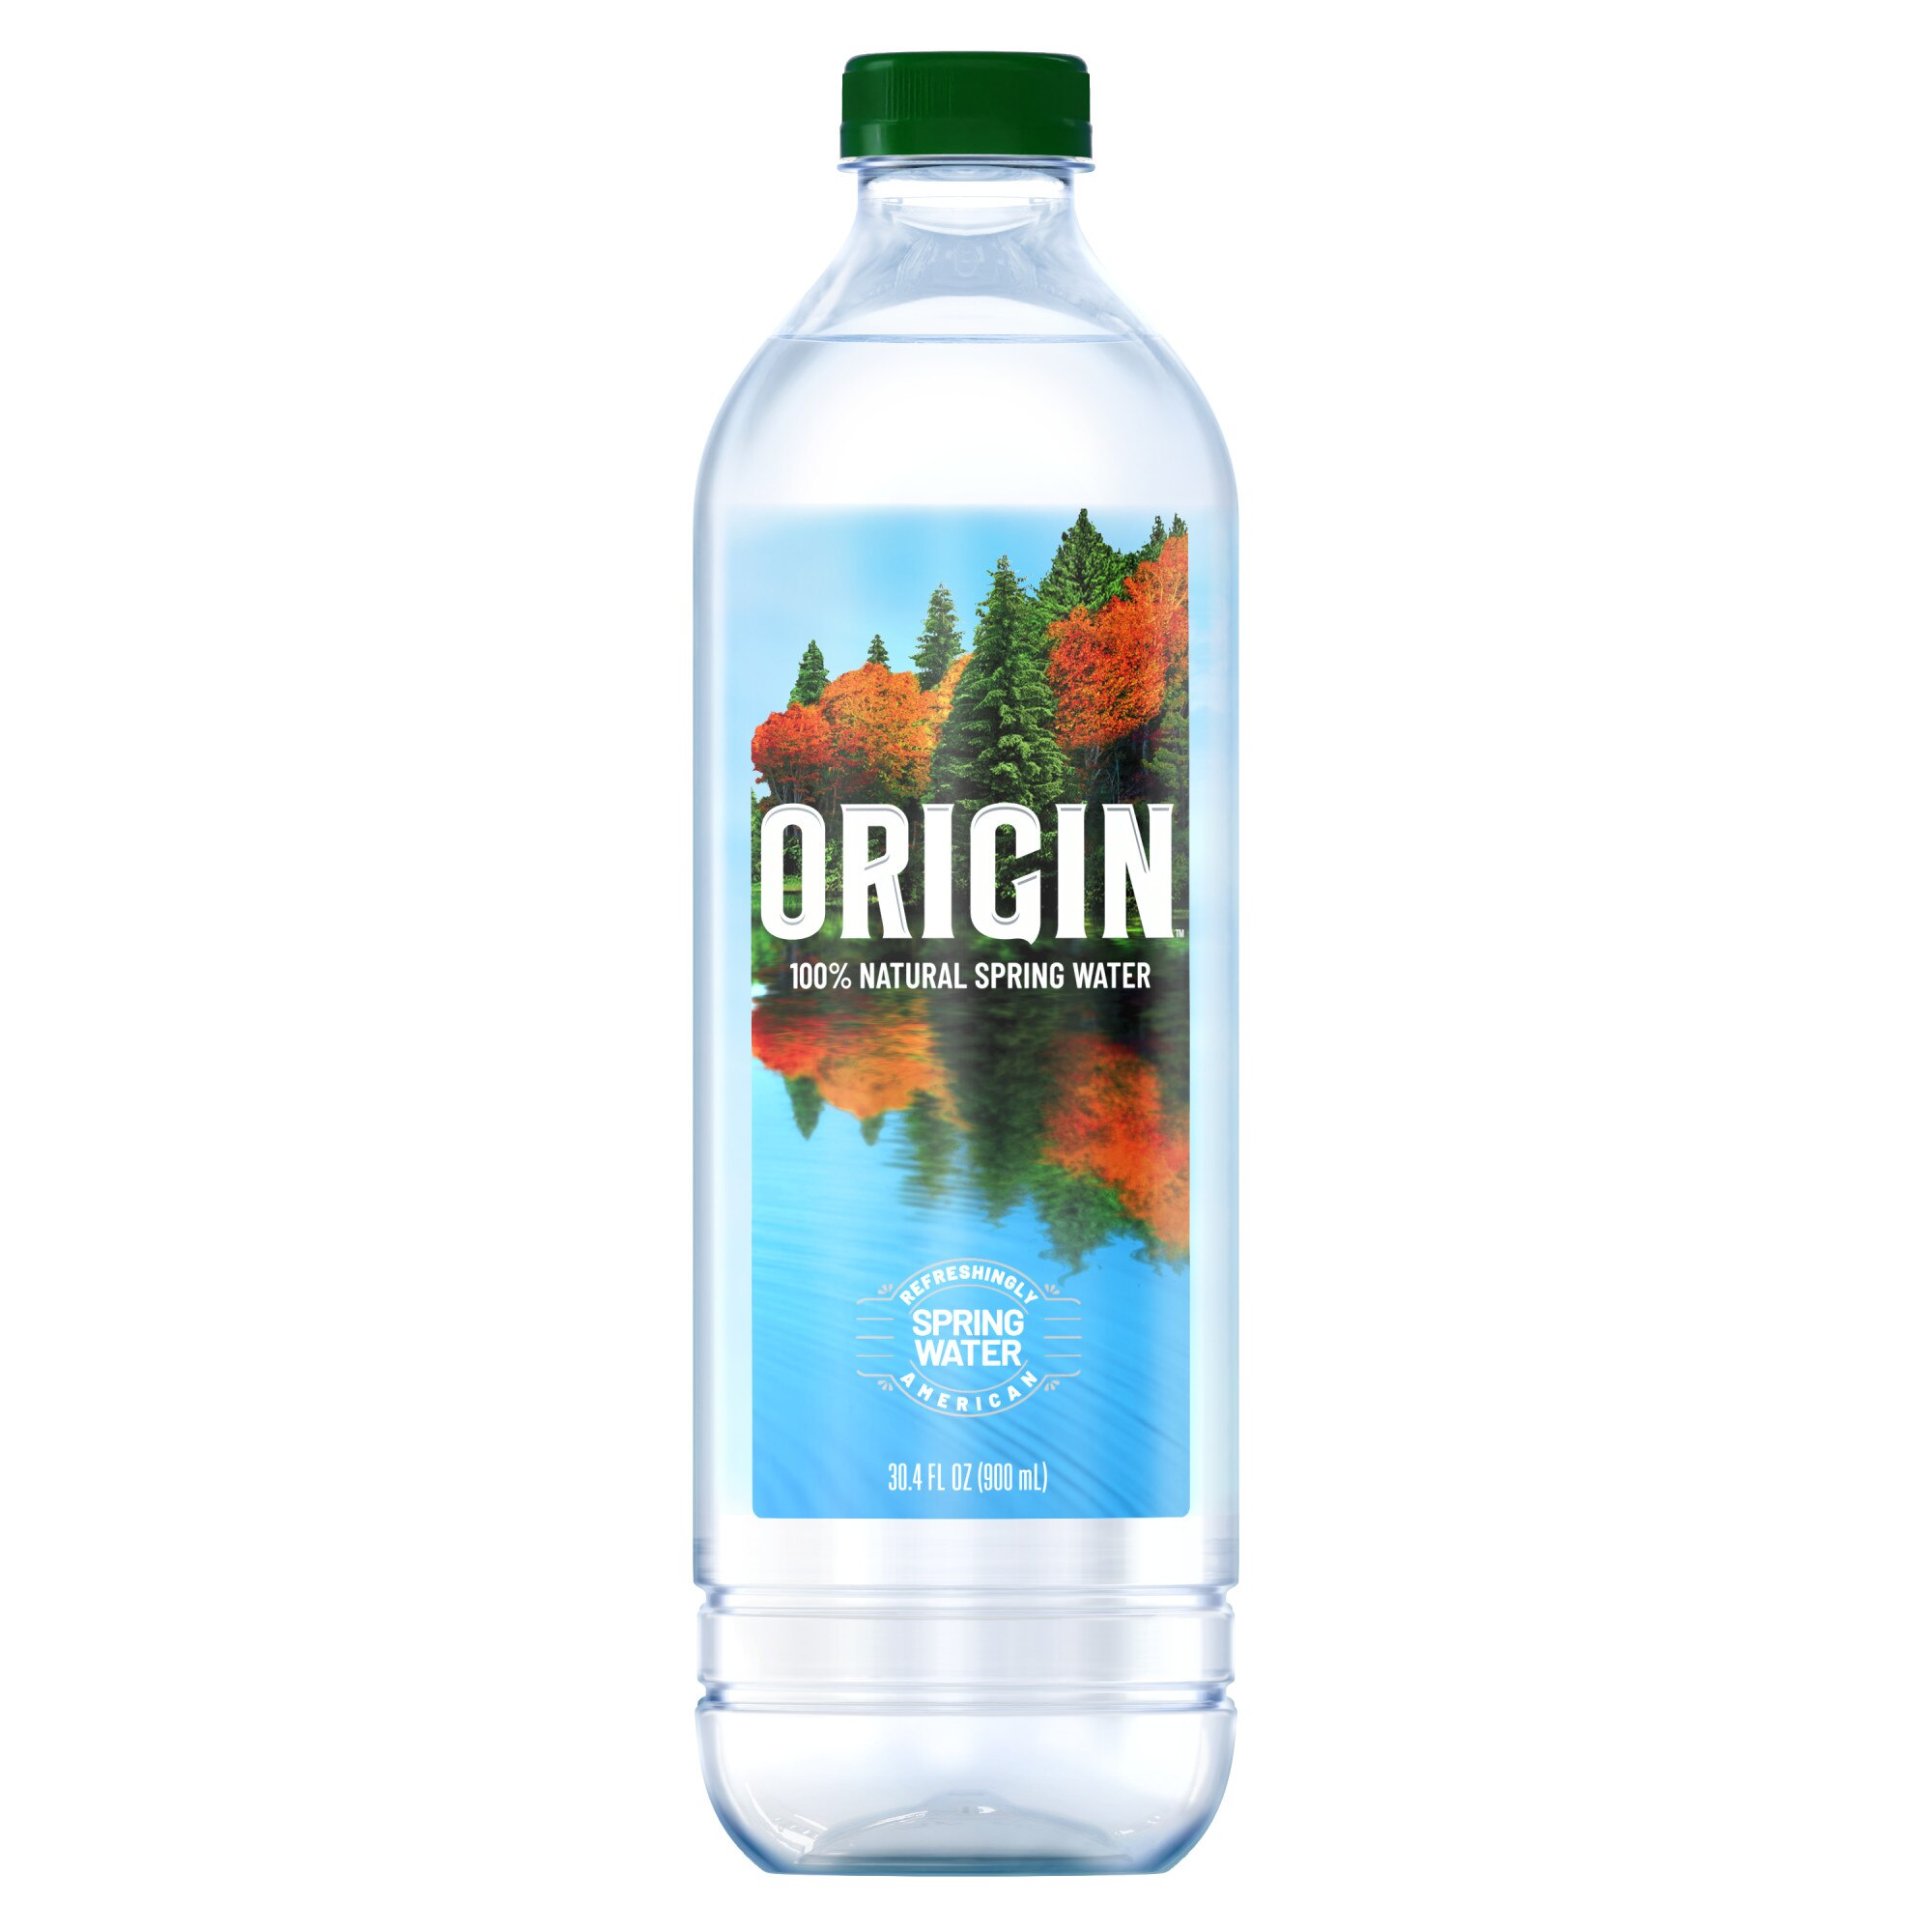 ORIGIN 100% Natural Spring Water, 30.4 OZ